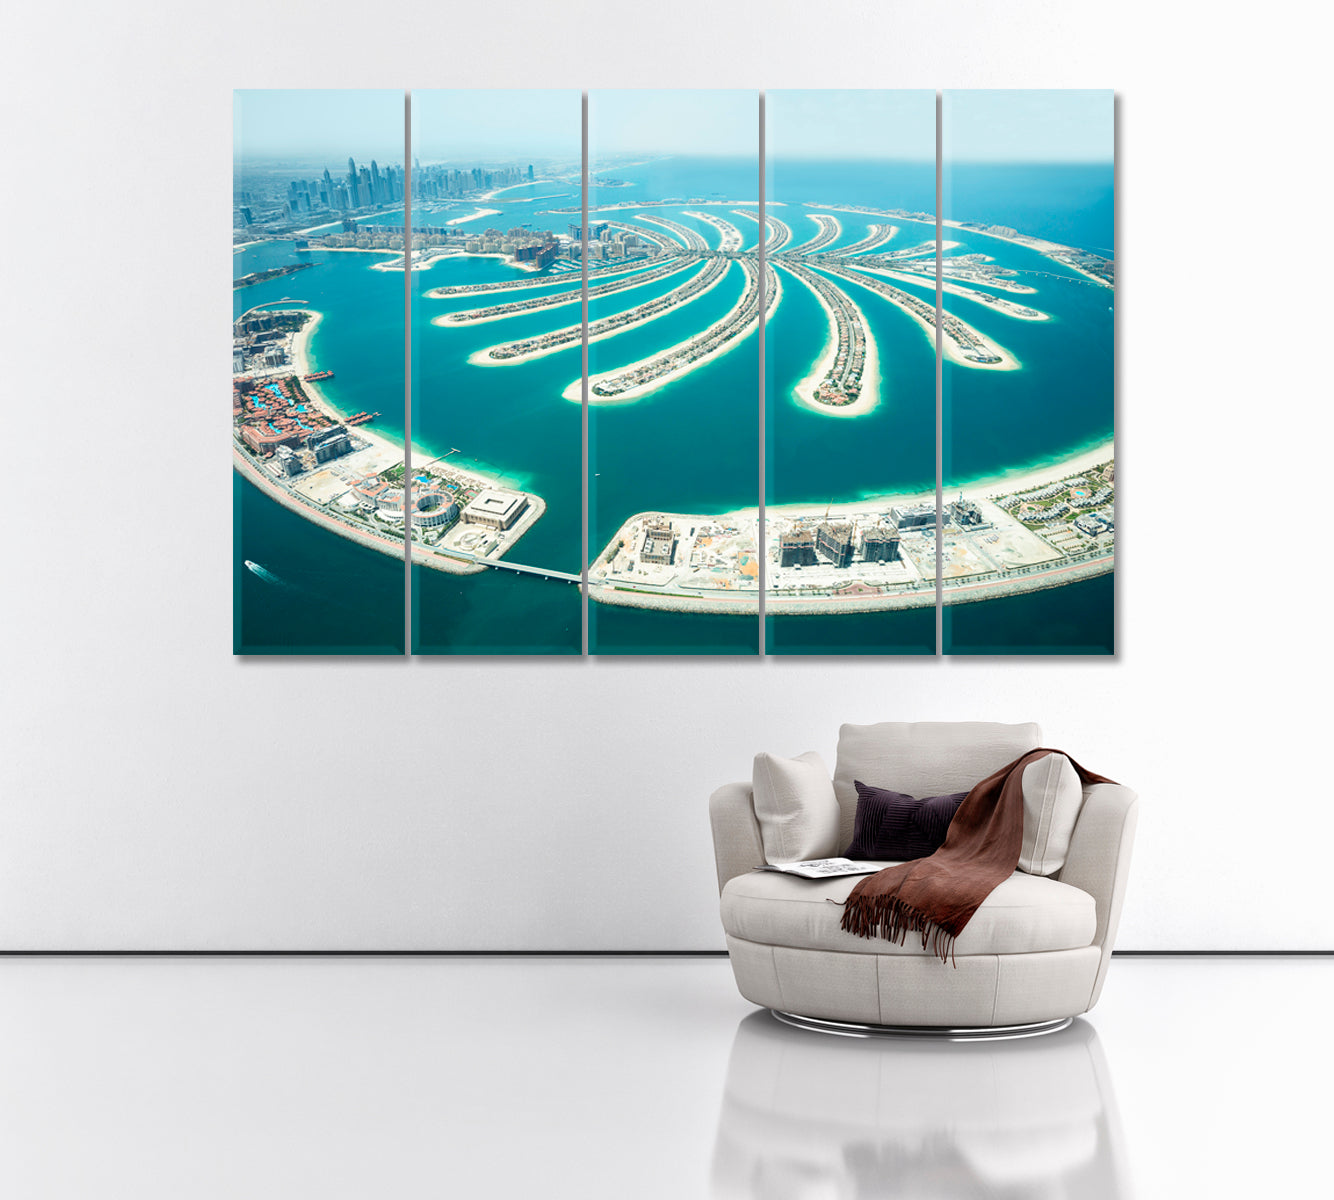 Jumeirah Palm Island Dubai Canvas Print ArtLexy 5 Panels 36"x24" inches 